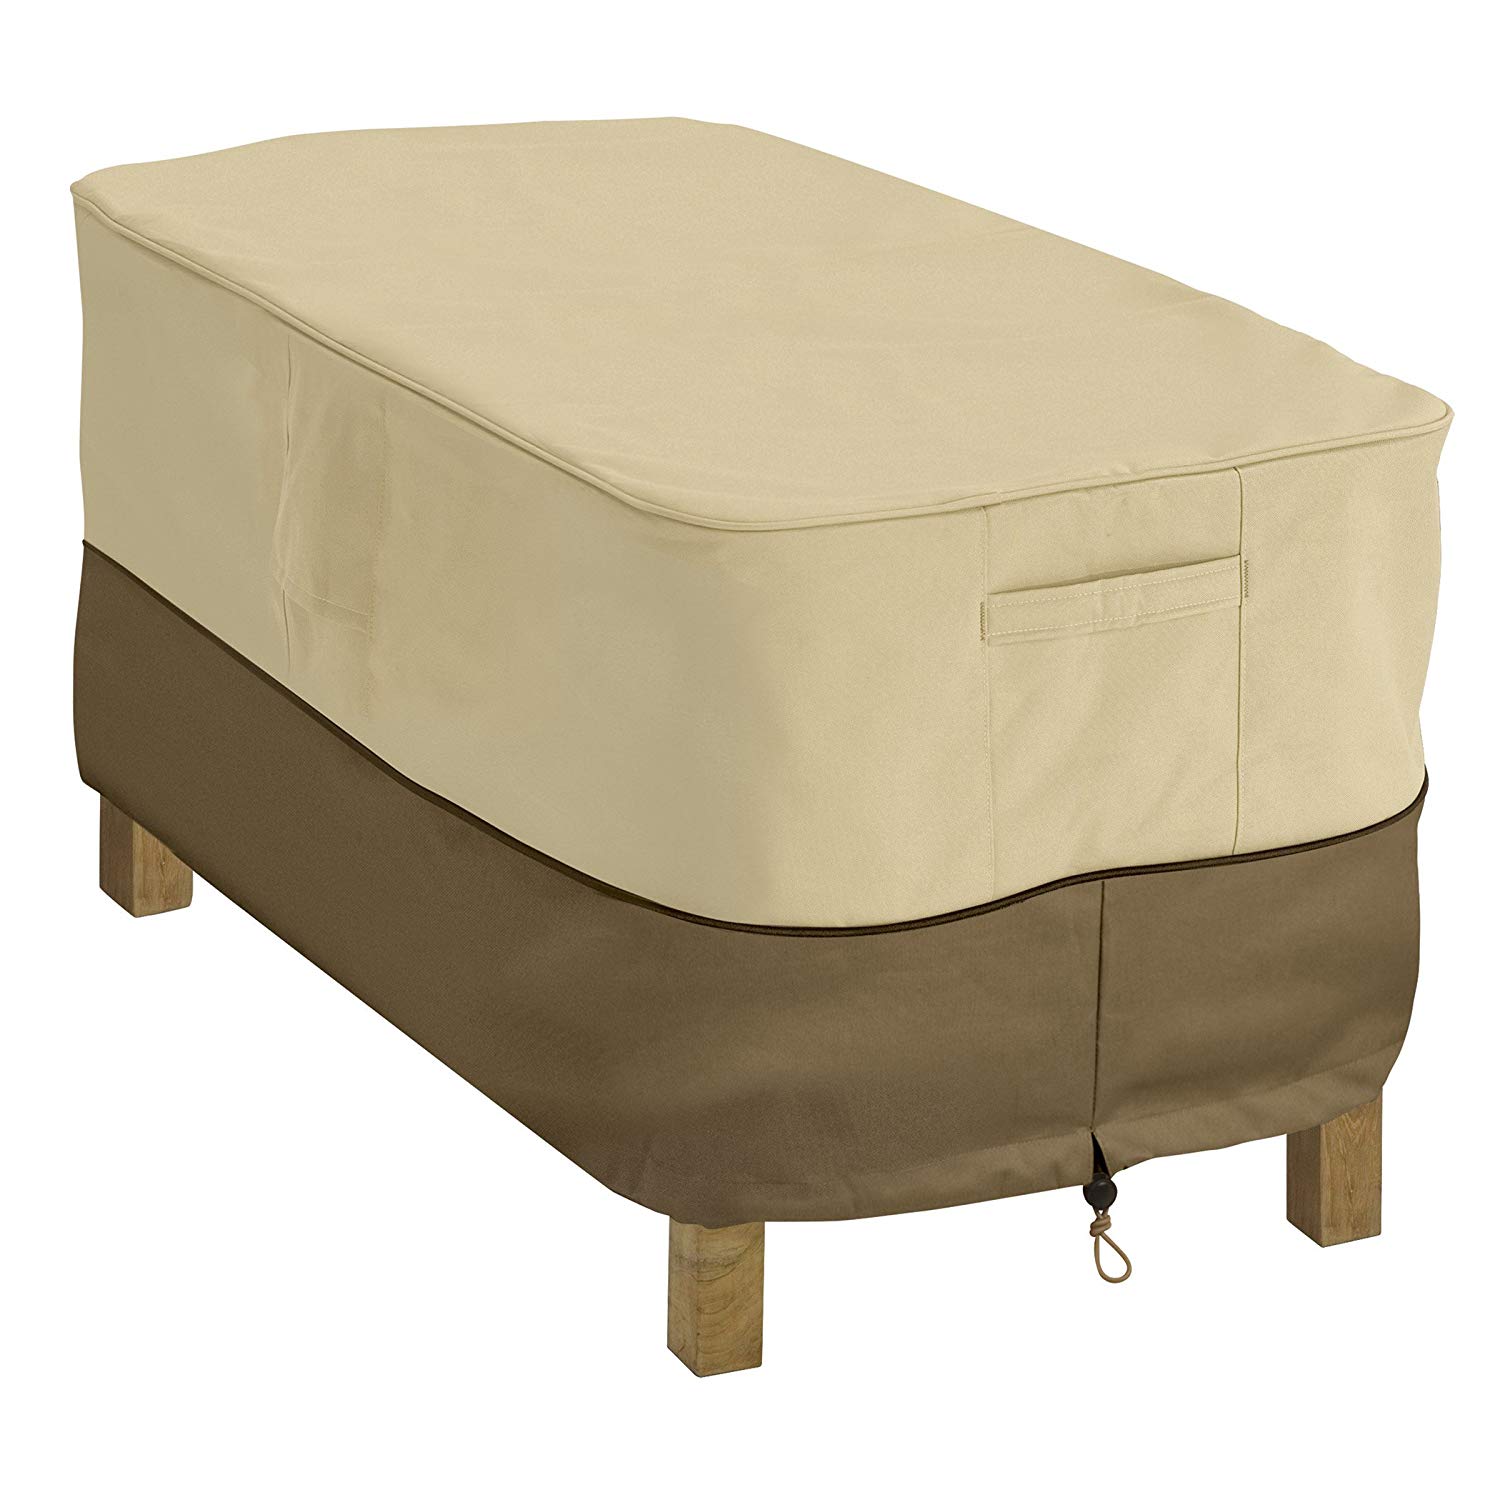 patio furniture covers amazon.com : classic accessories veranda patio coffee table cover - durable QKPPLXL